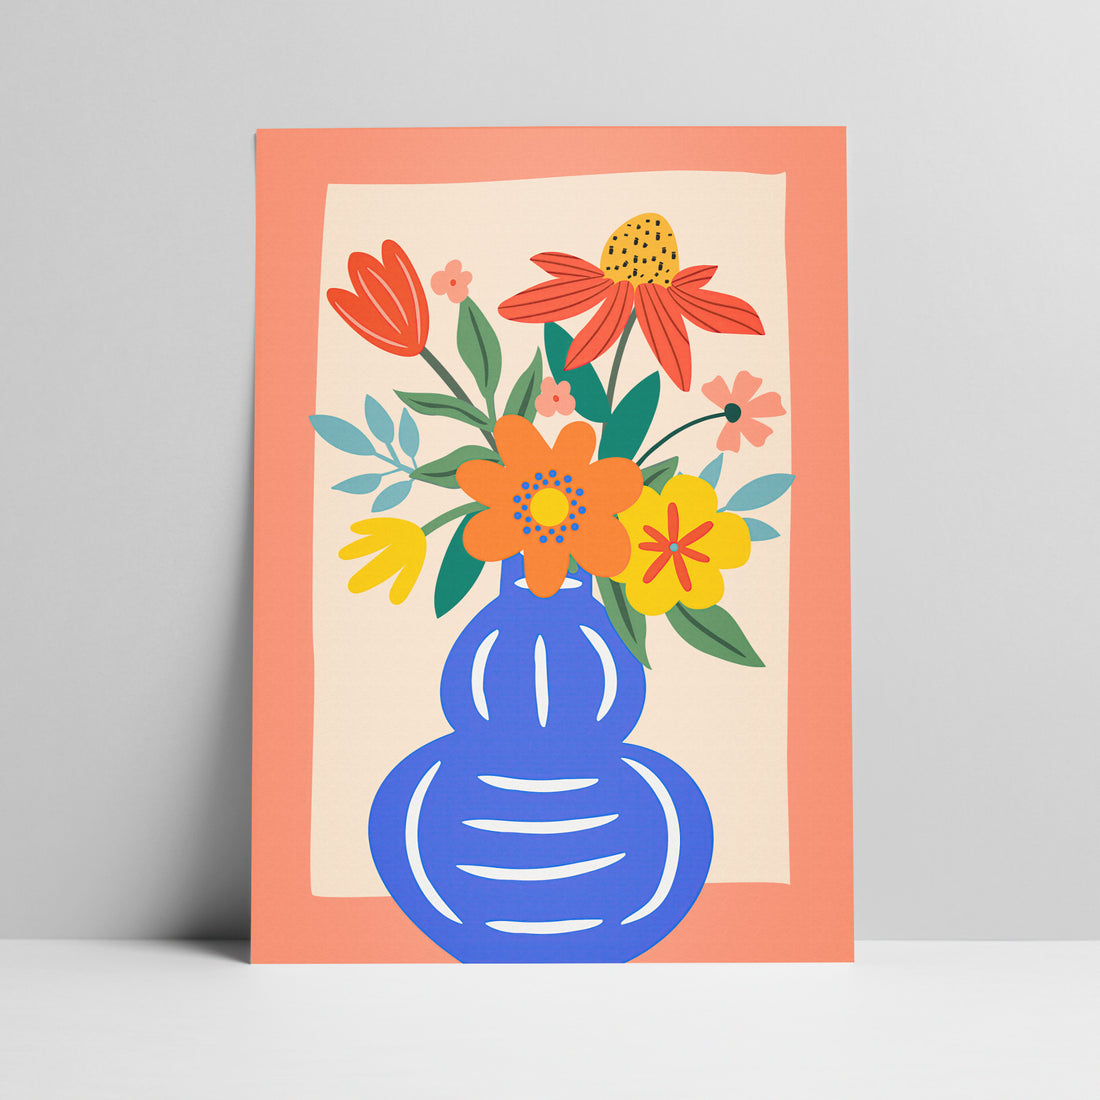 Floral bouquet in blue vase illustration